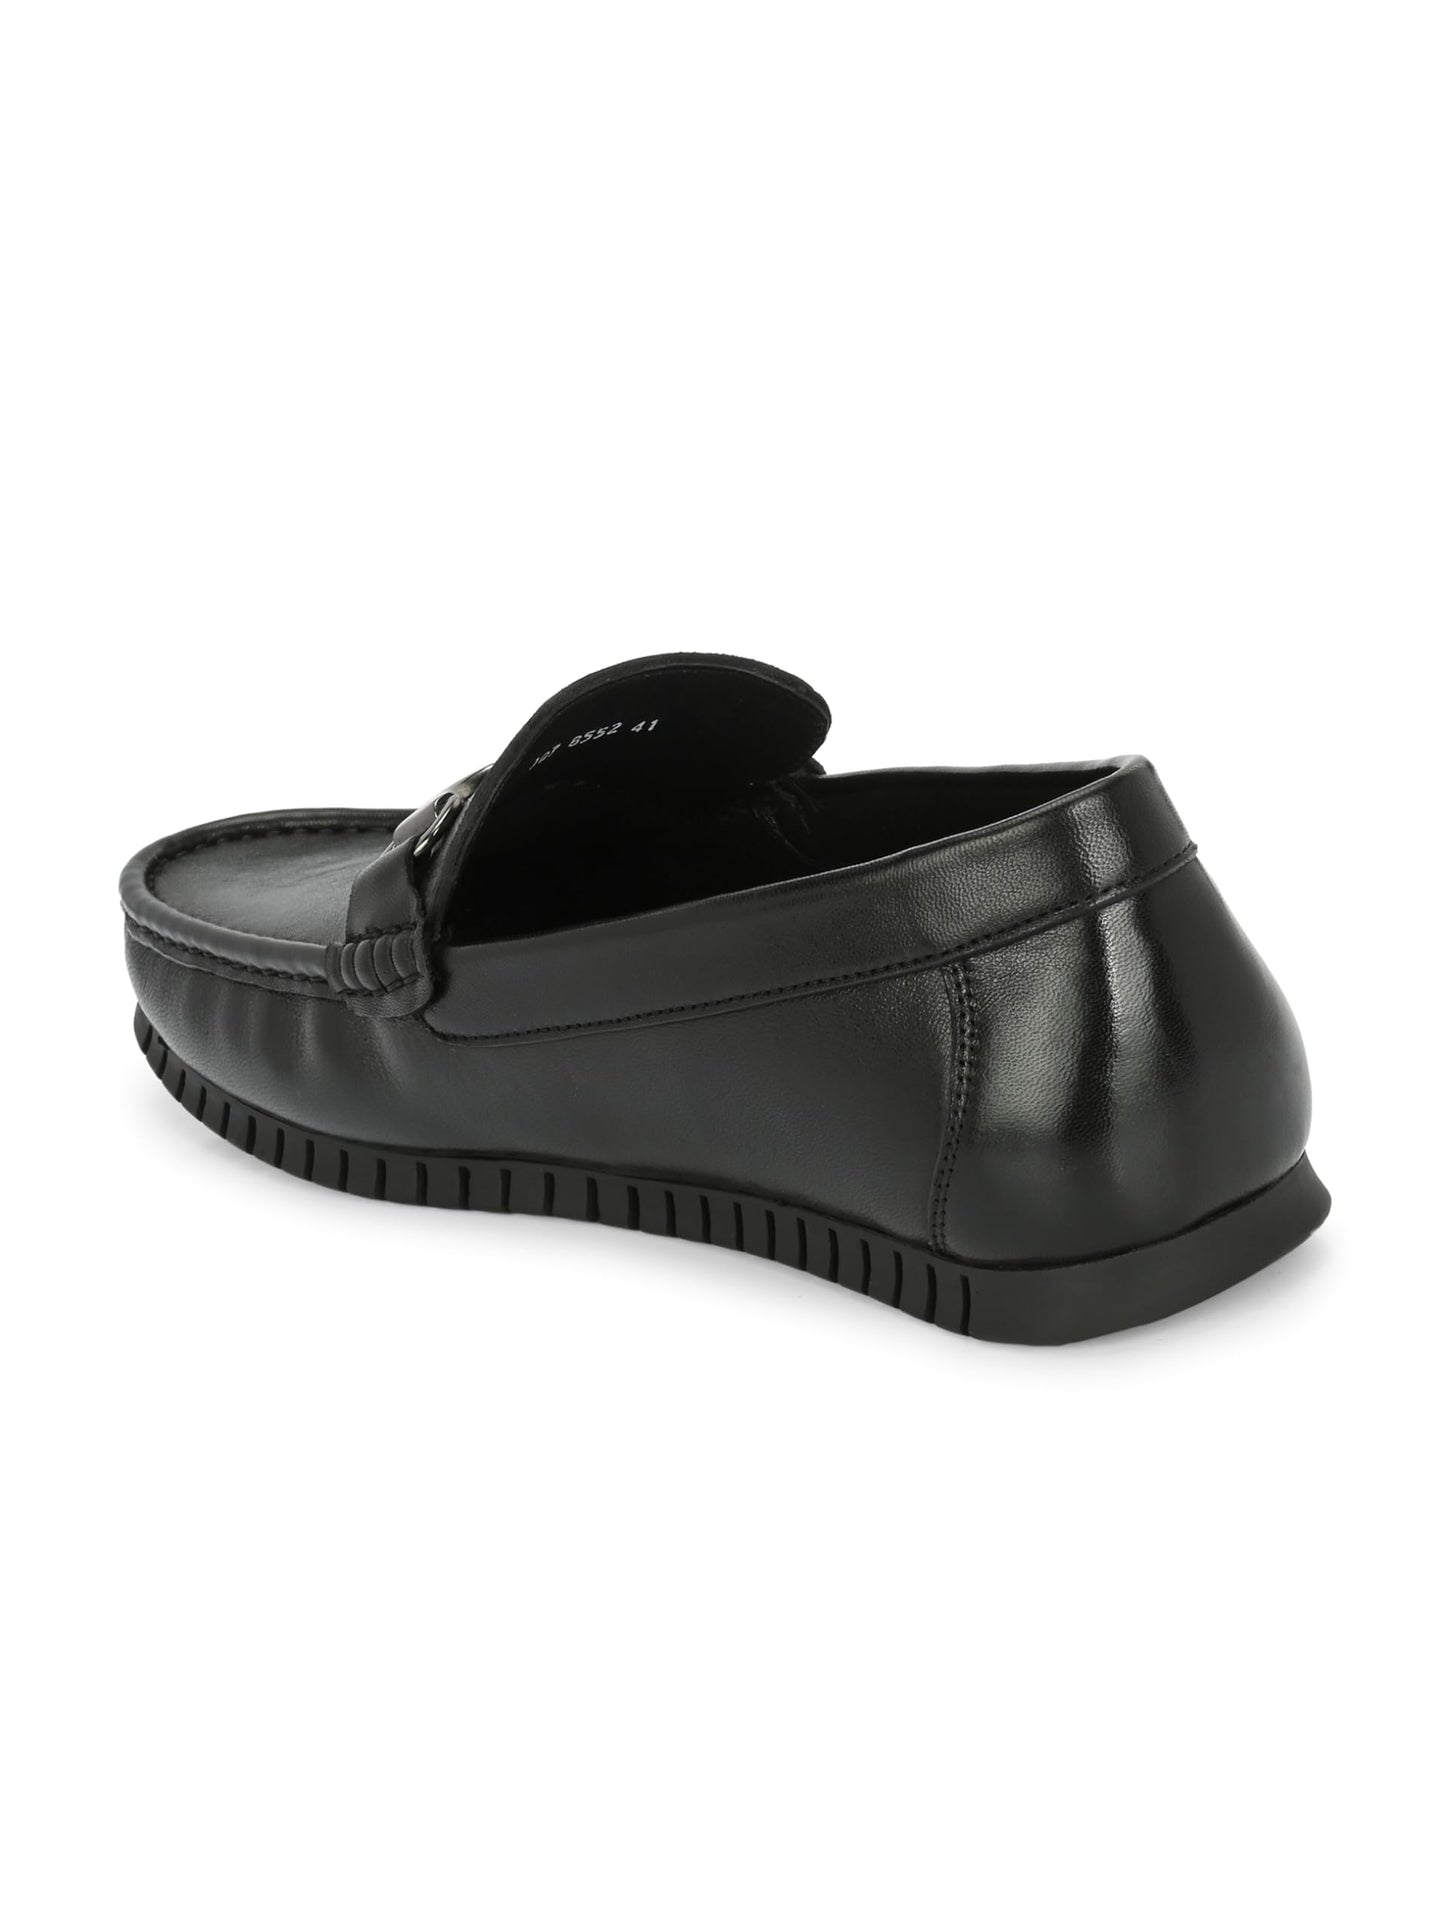 HITZ Men's Black Leather Slip-On Comfort Loafer Shoes - 11